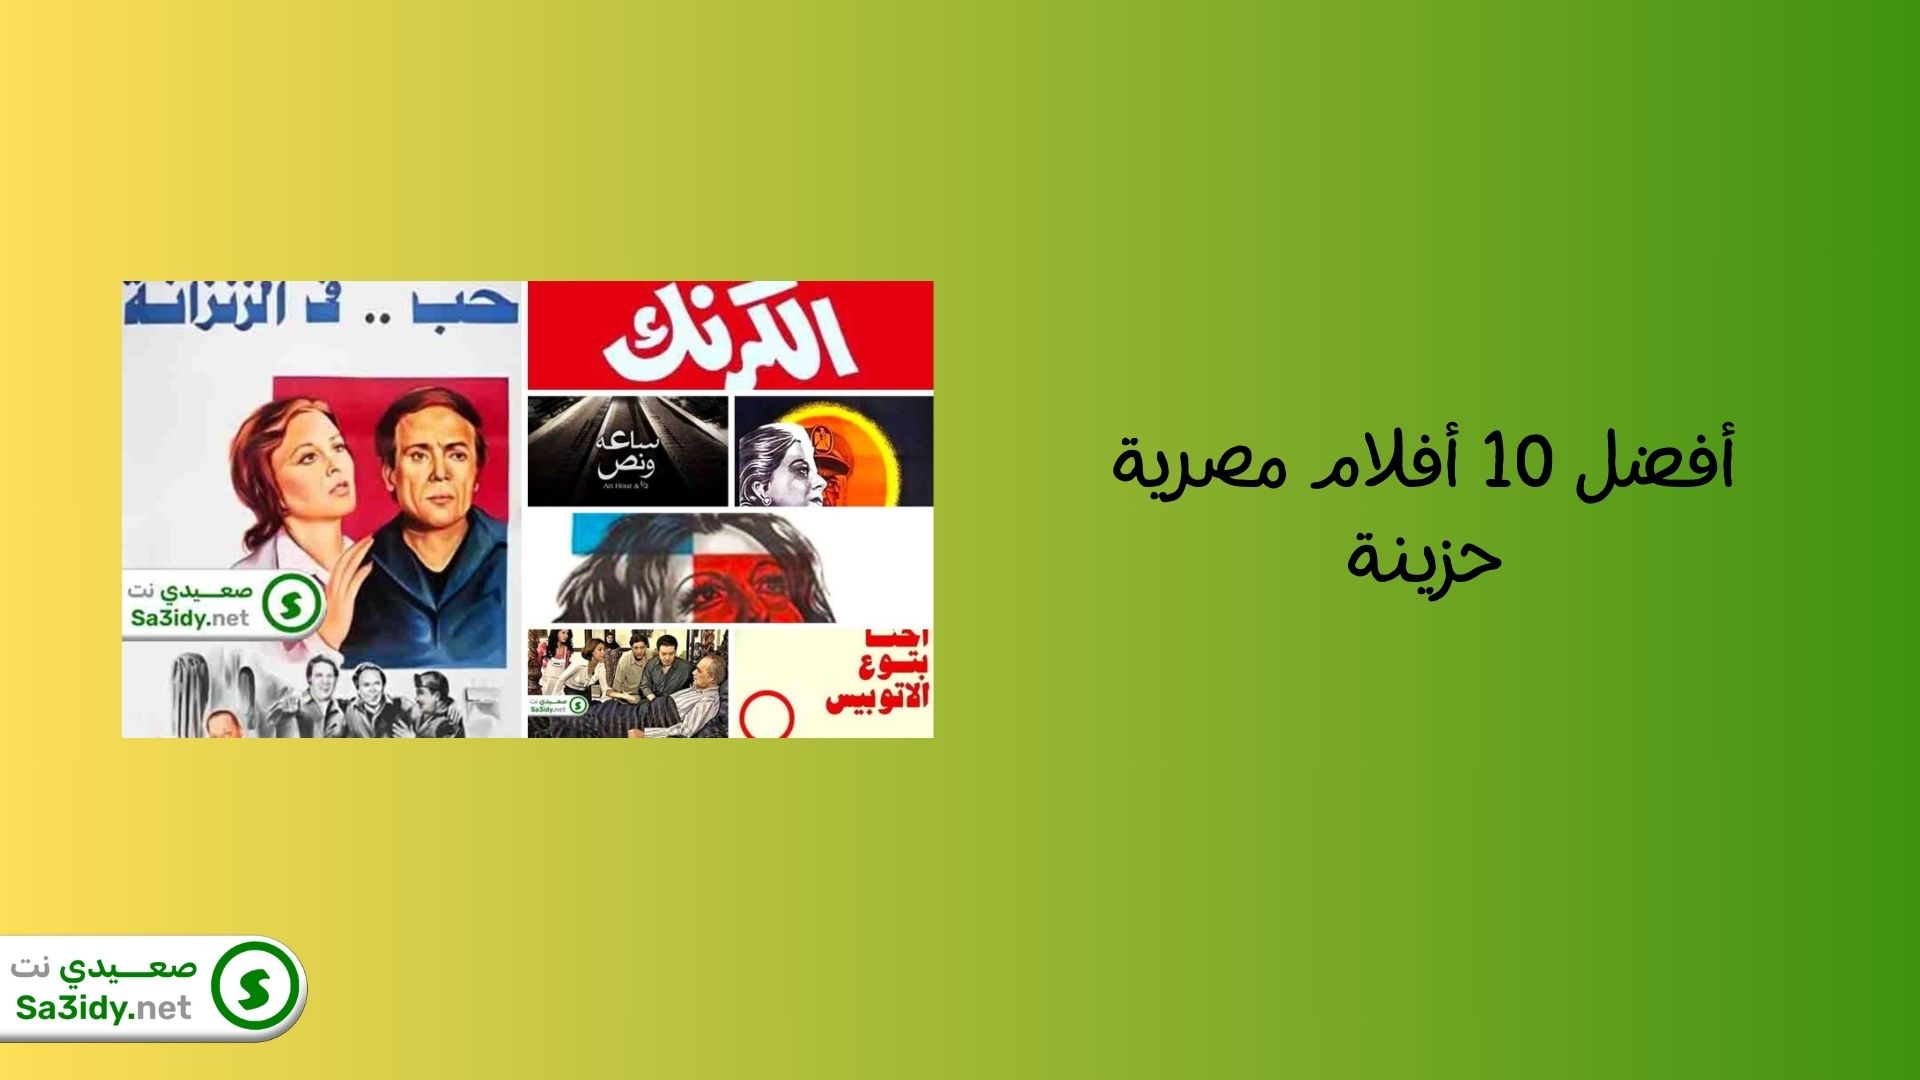 أفضل 10 أفلام مصرية حزينة